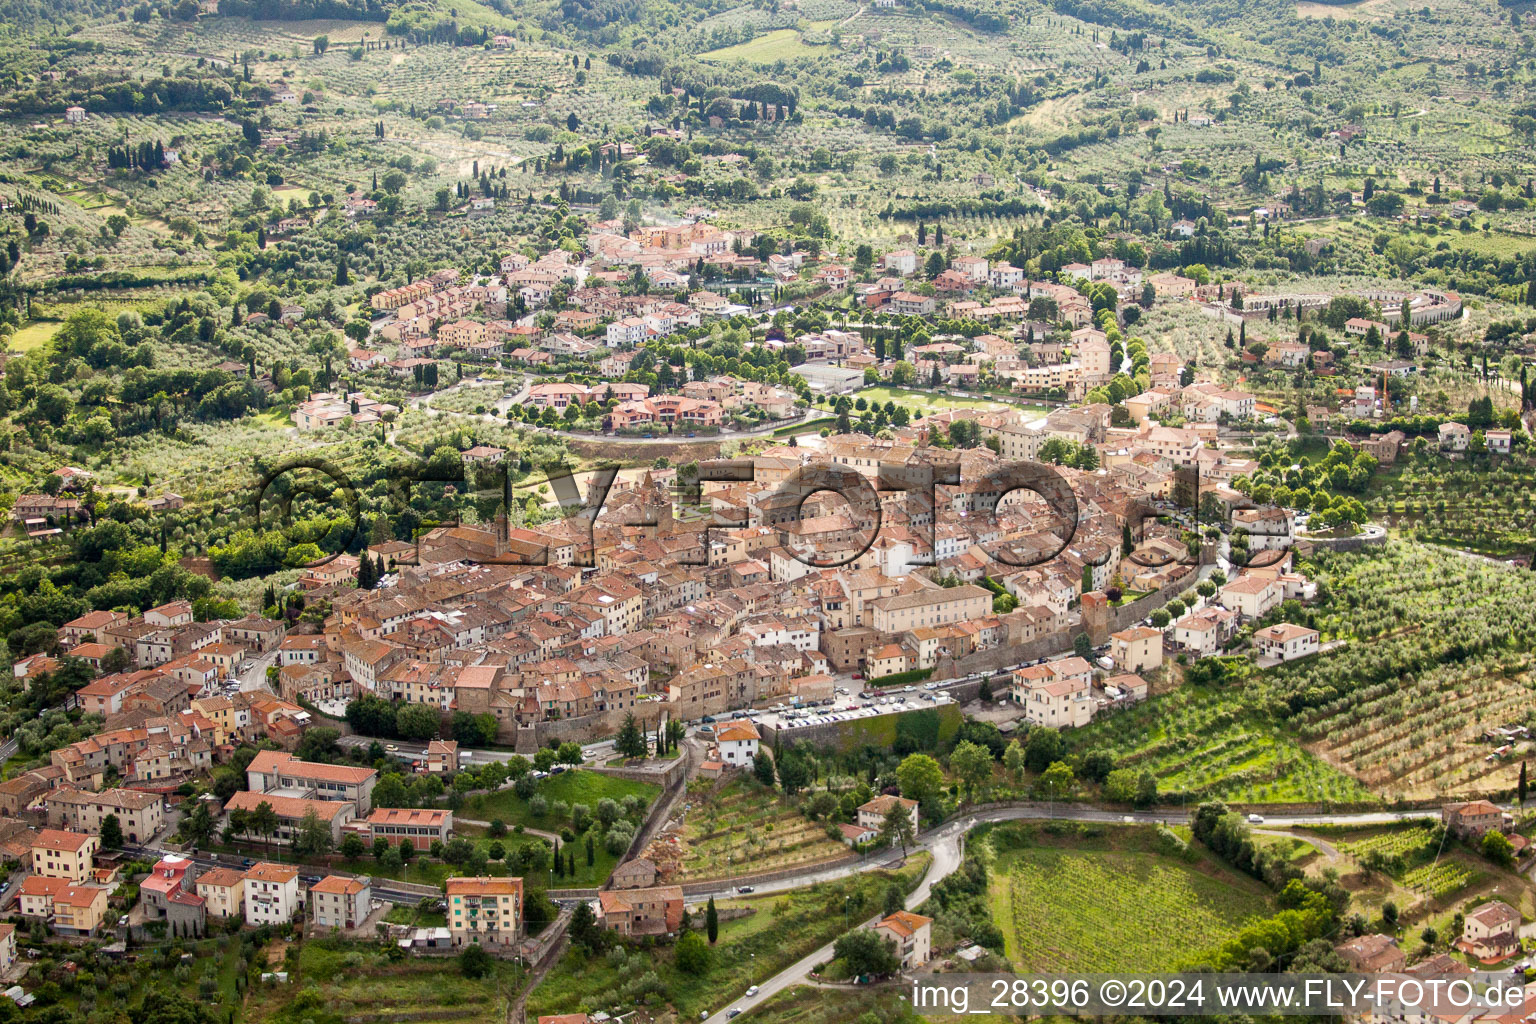 Dorf - Ansicht am Rande von landwirtschaftlichen Feldern und Nutzflächen in Monte San Savino in Toskana im Bundesland Toscana, Italien